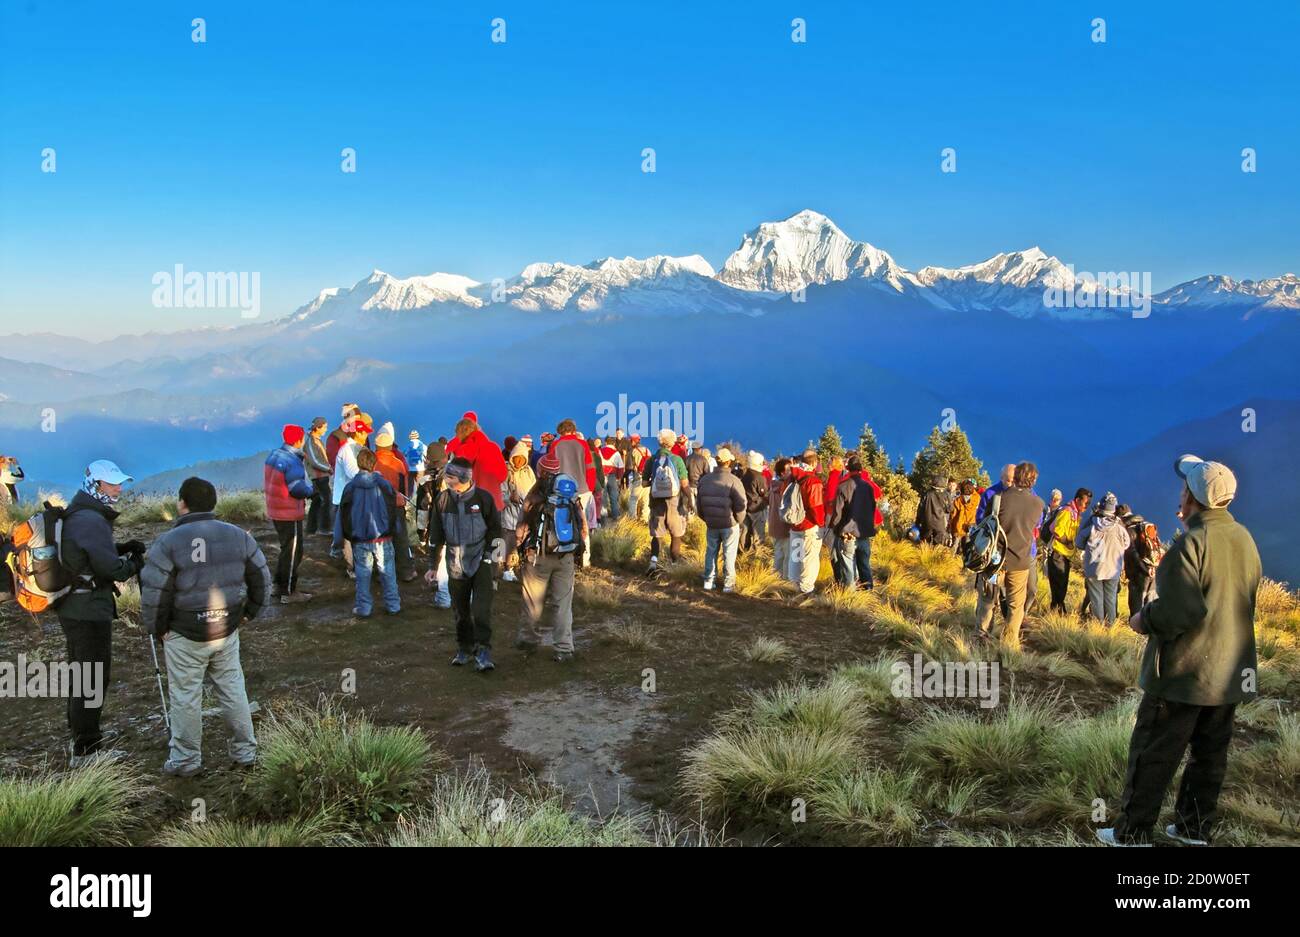 POON HILL, NEPAL - 12 OTTOBRE 2008: I turisti incontrano l'alba in cima alla collina di Poon in Himalaya, Nepal Foto Stock